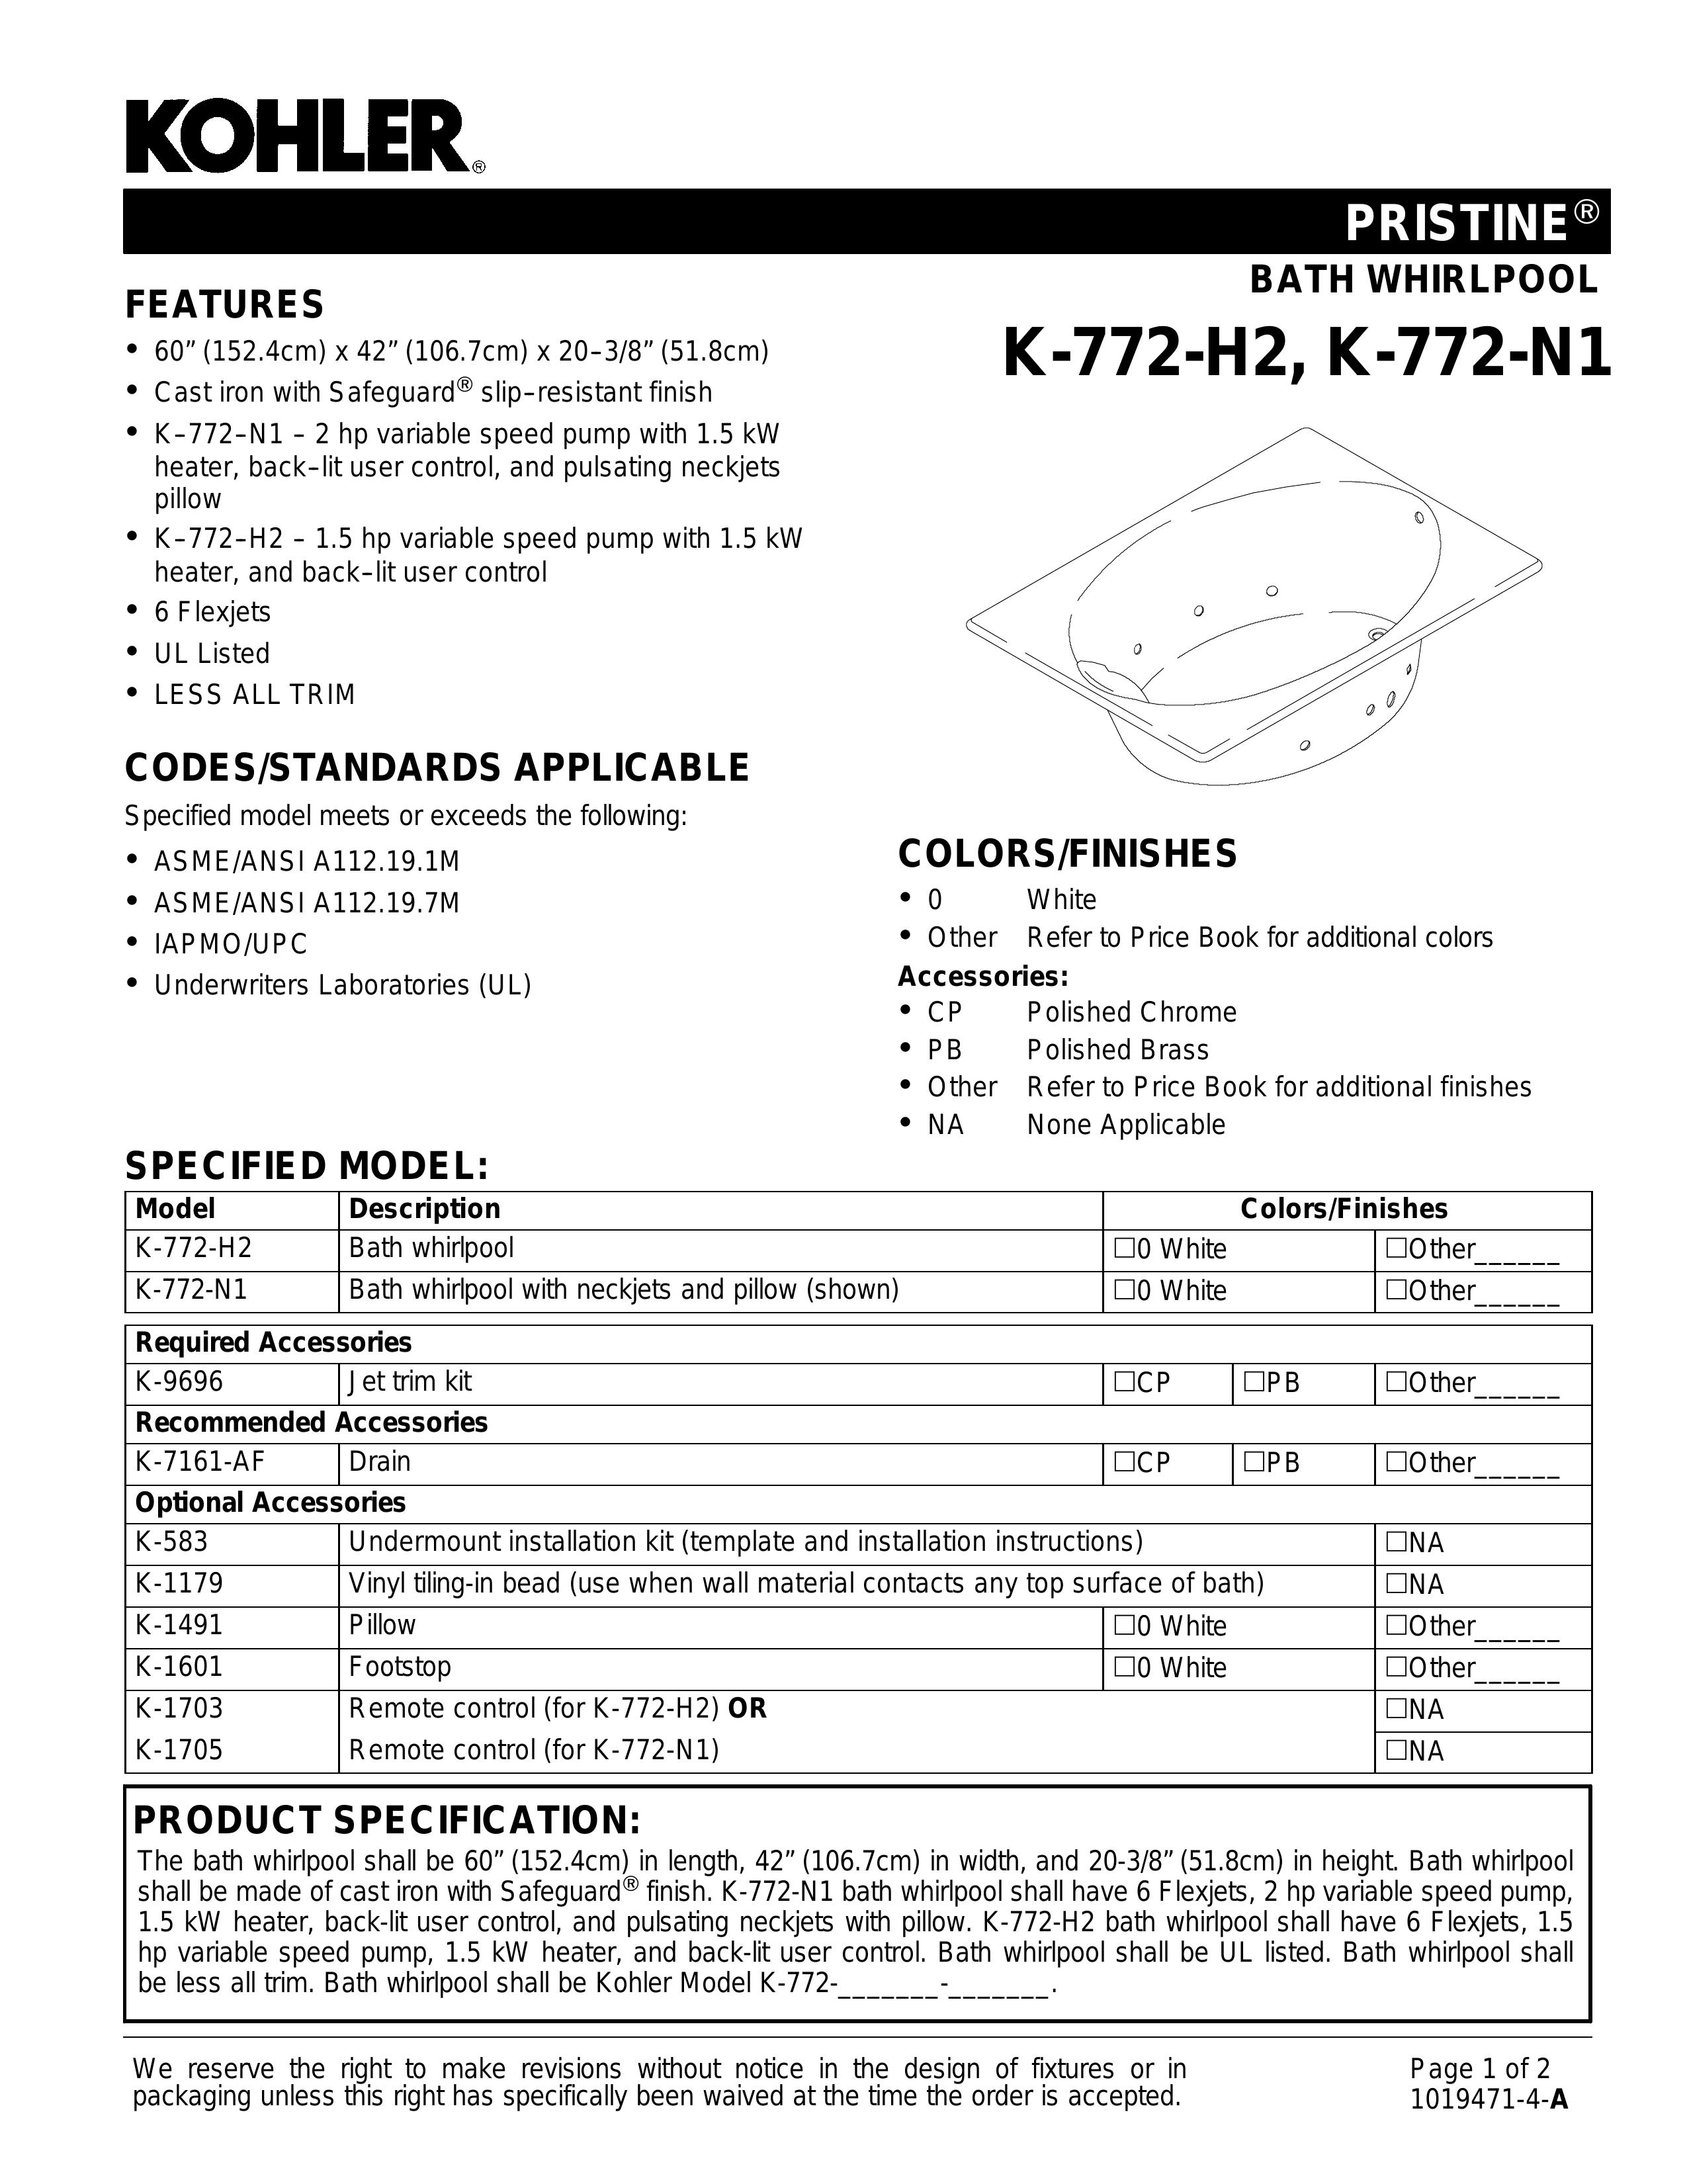 Kohler K-1491 Hot Tub User Manual